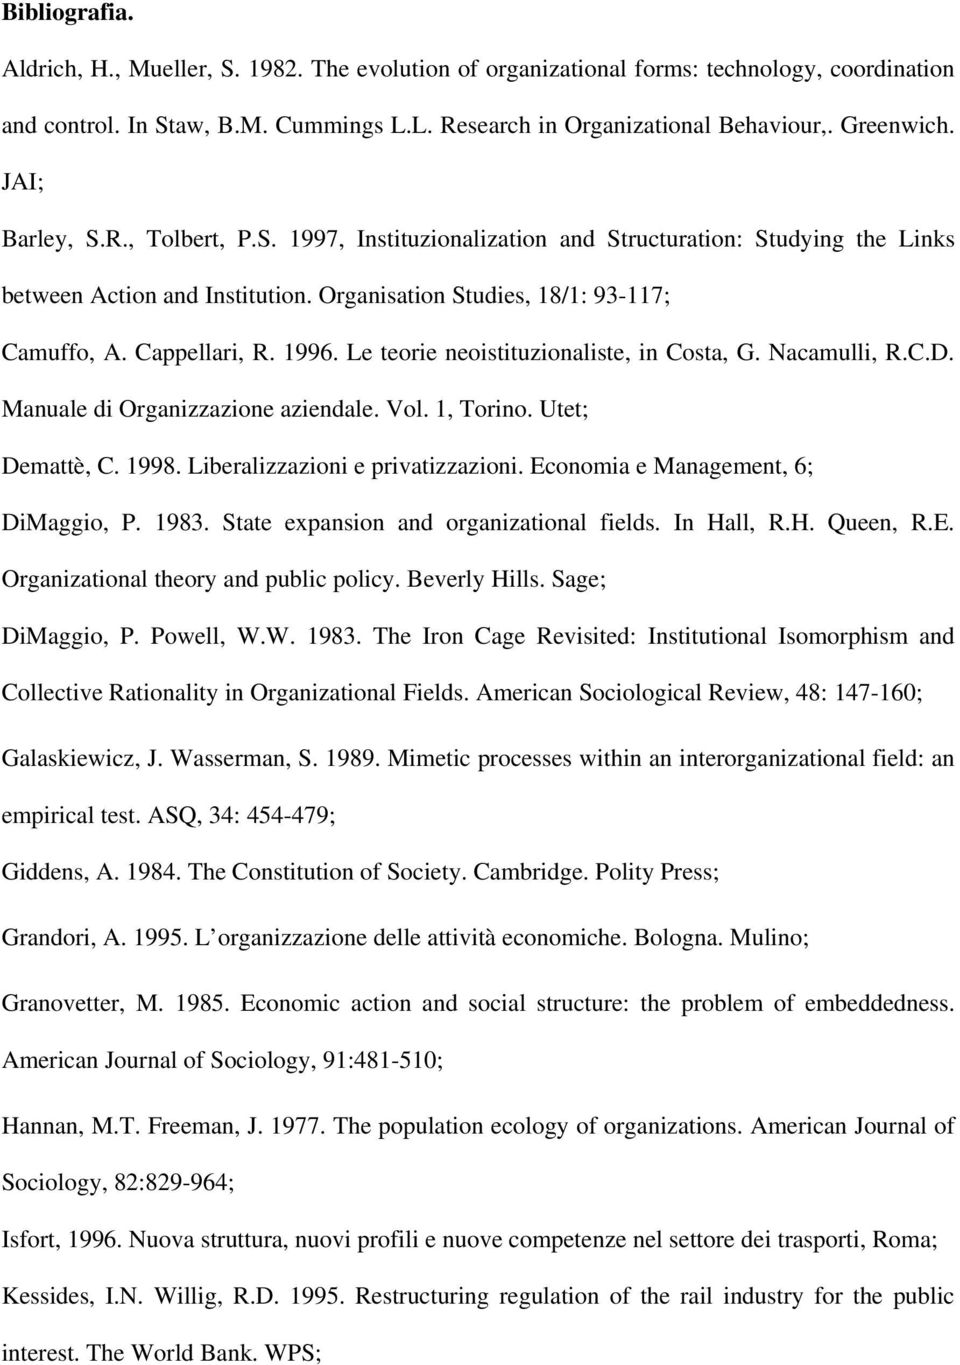 Le teorie neoistituzionaliste, in Costa, G. Nacamulli, R.C.D. Manuale di Organizzazione aziendale. Vol. 1, Torino. Utet; Demattè, C. 1998. Liberalizzazioni e privatizzazioni.